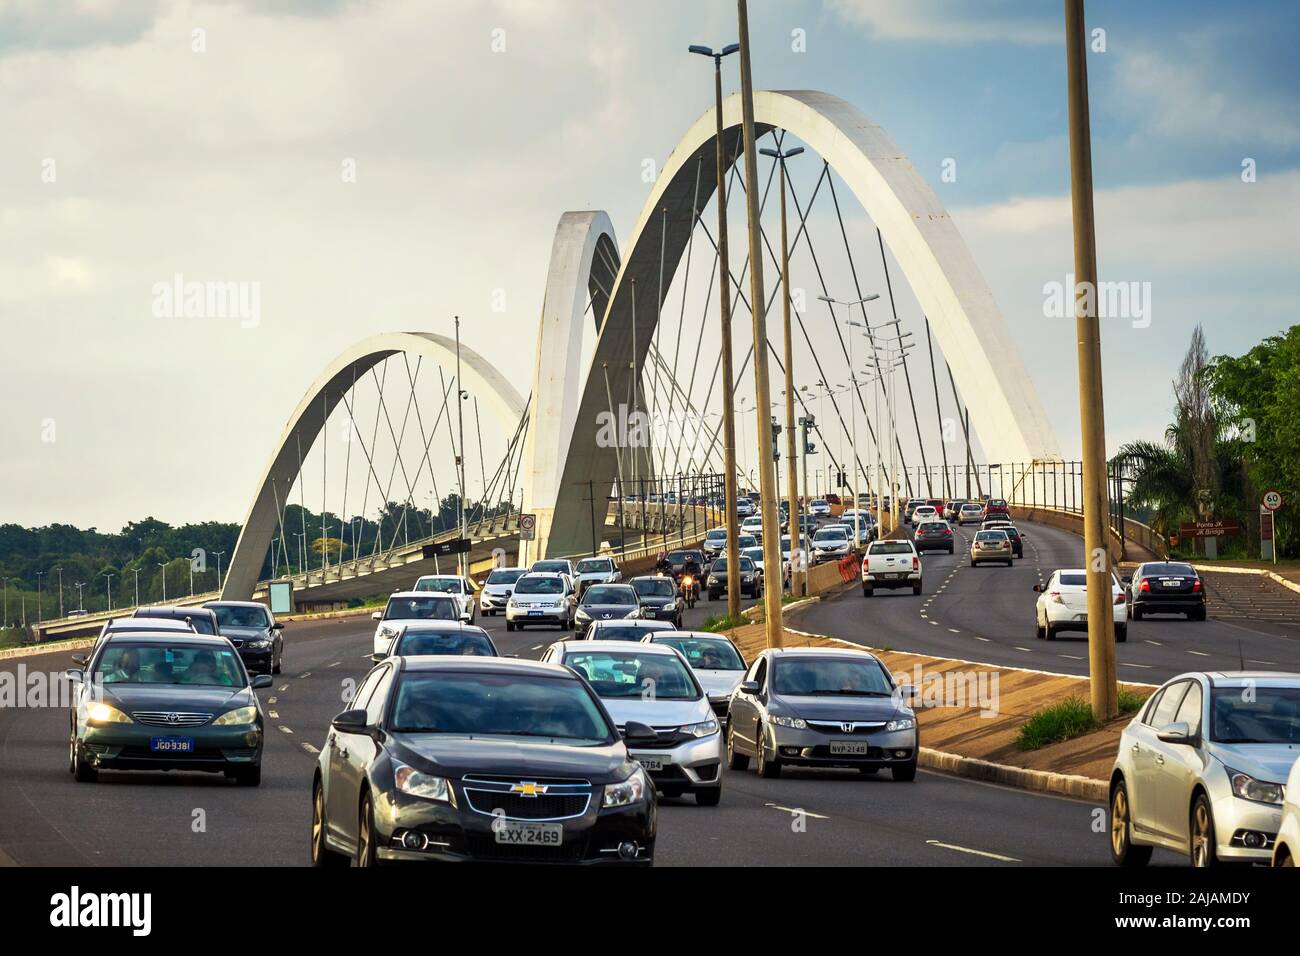 Le trafic sur le pont Juscelino Kubitschek aka JK Bridge à Brasilia, capitale du Brésil. Banque D'Images